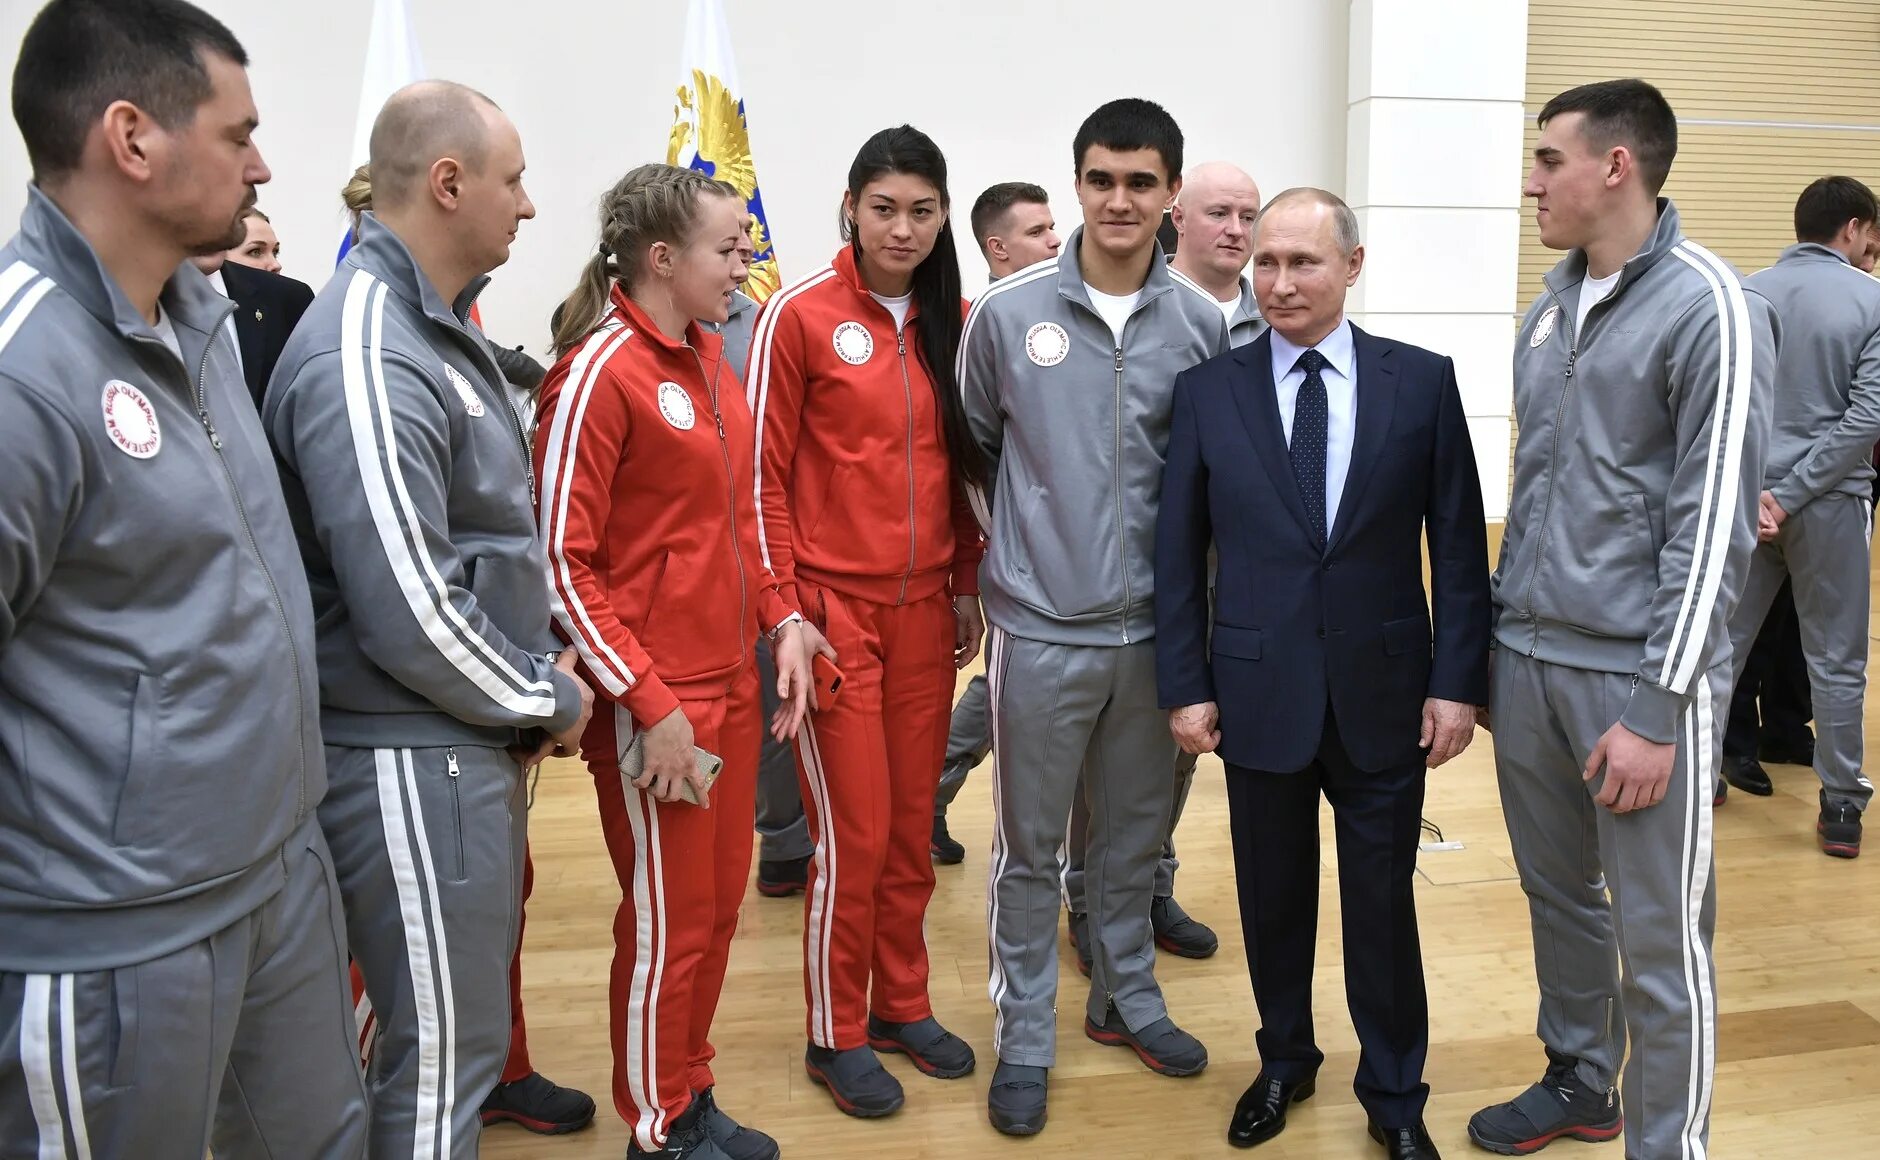 Встреча со спортсменами. Встреча Путина со спортсменами. Встреча спортсменов в Кремле. Фото Путина с спортсменами.